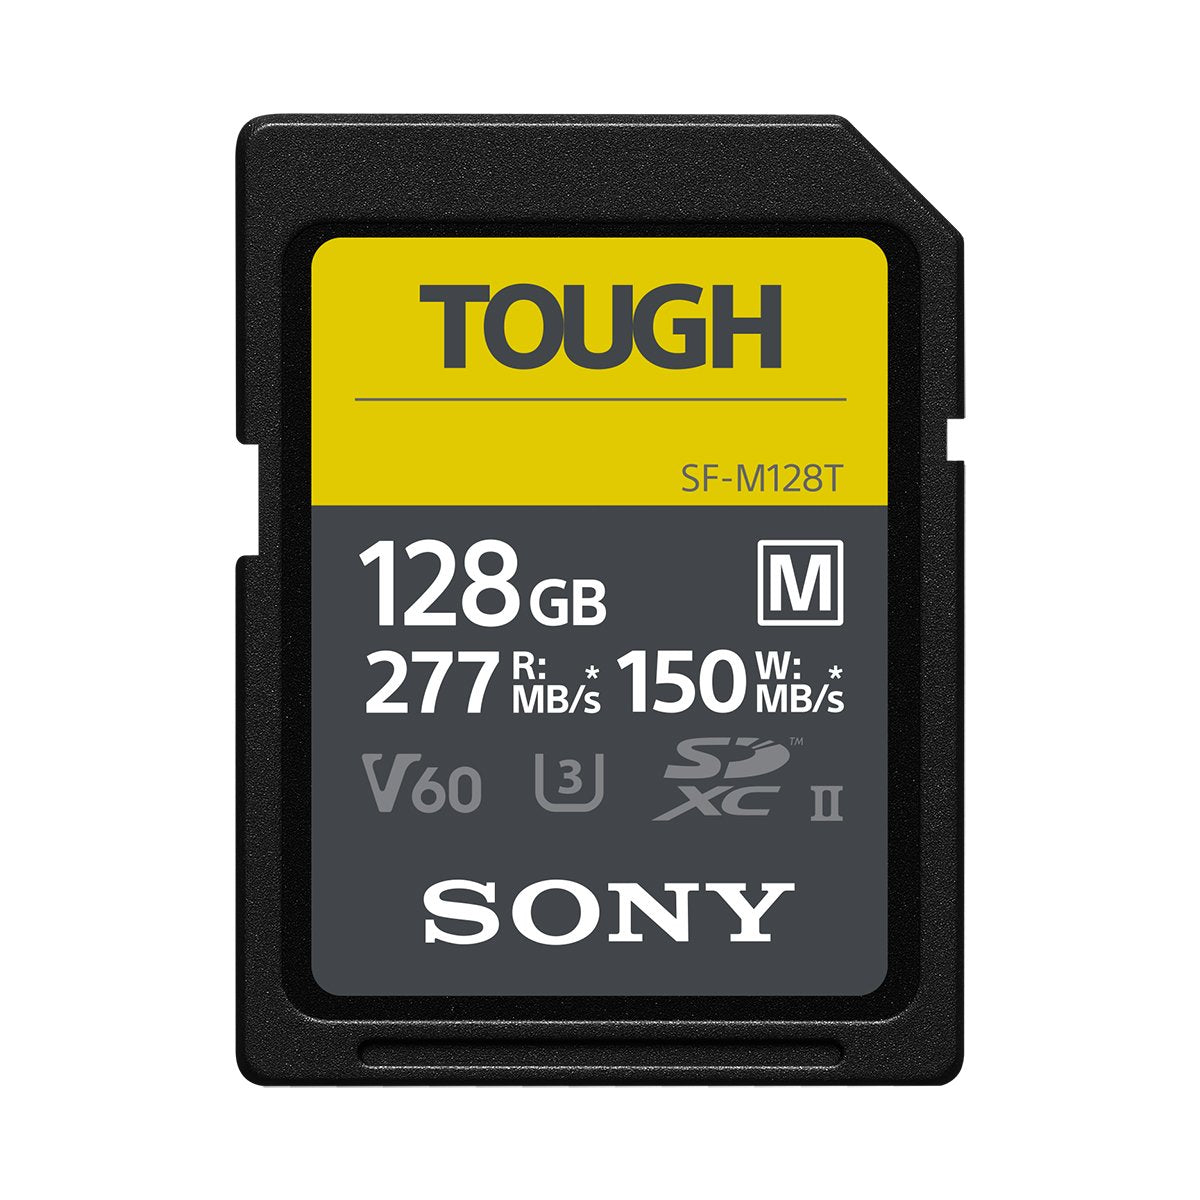 Sony 128GB SF-M TOUGH UHS-II SDXC (V60) Card